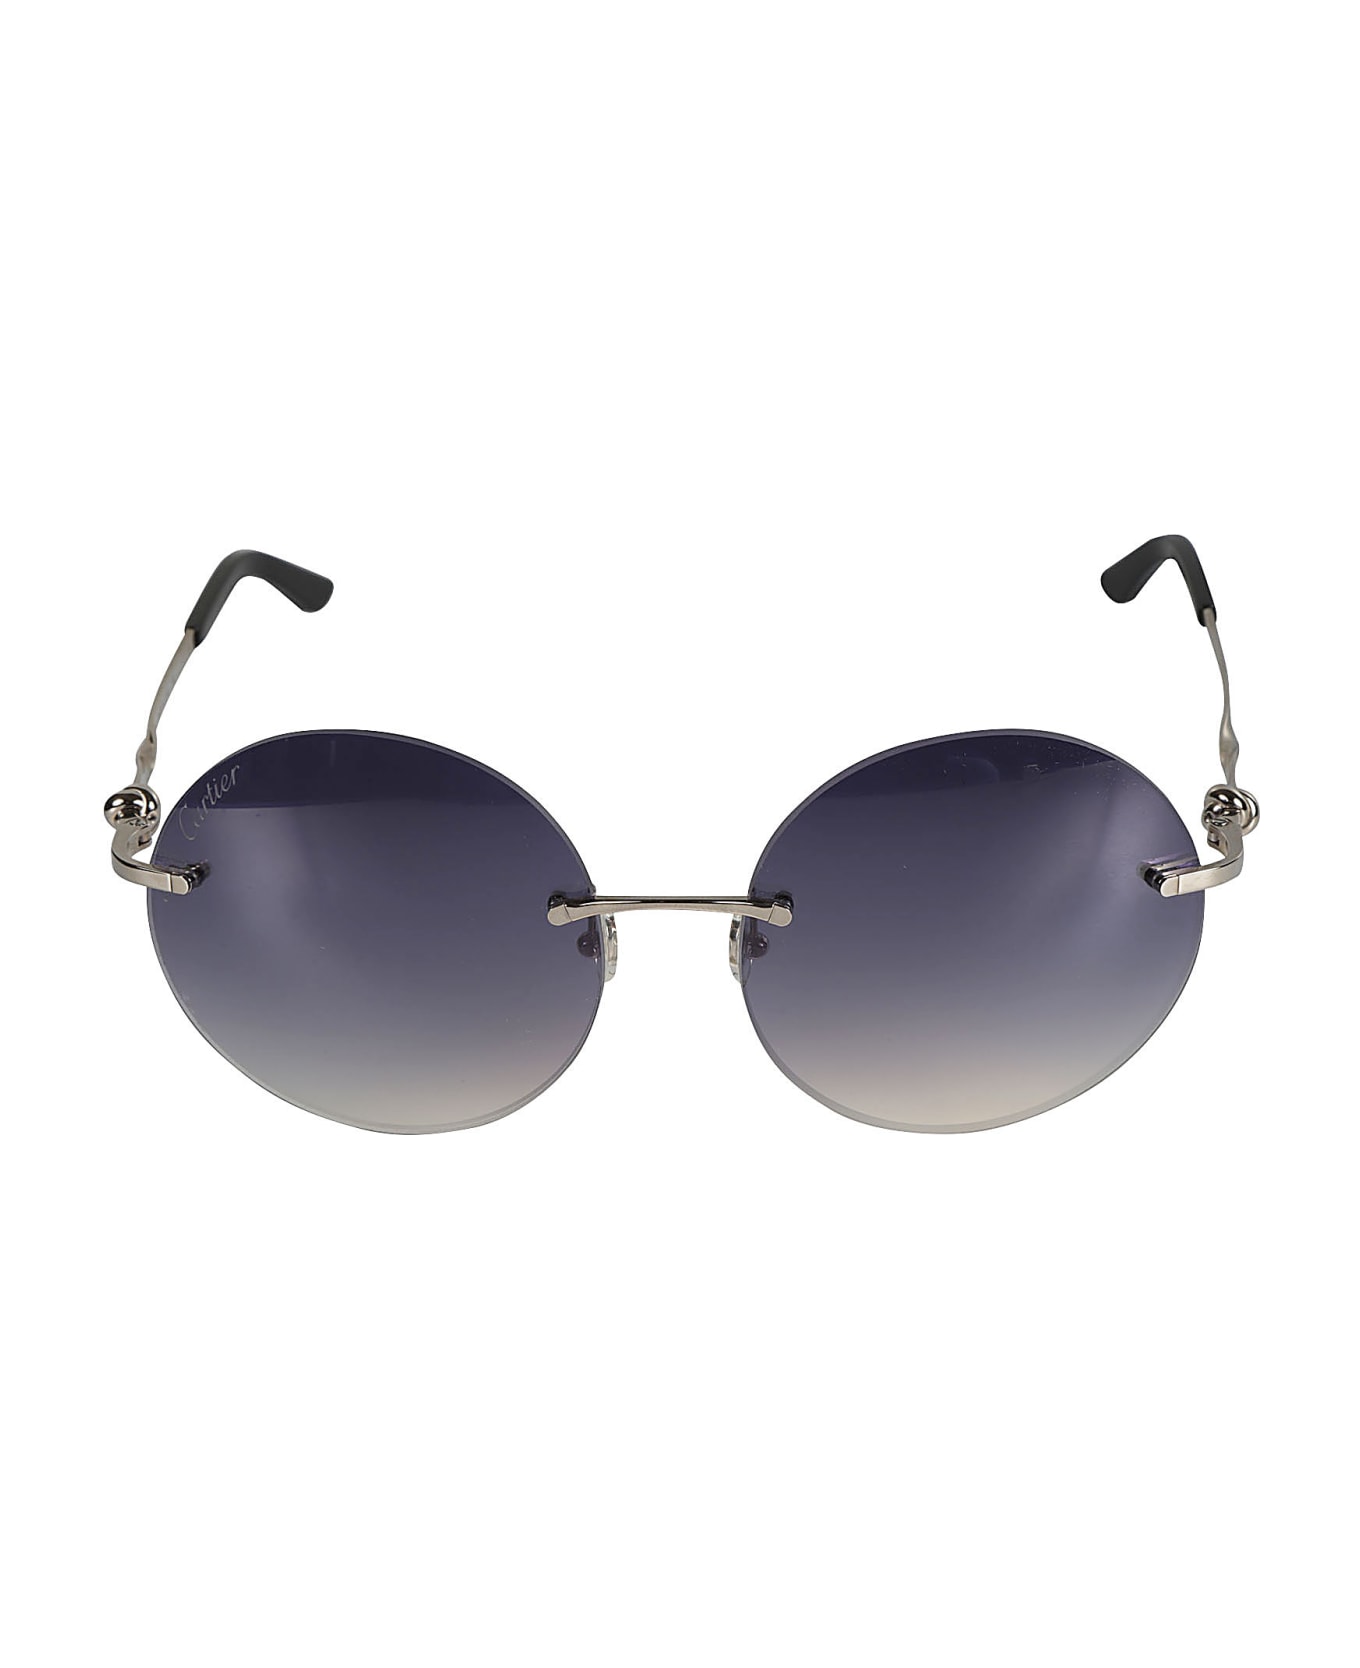 Cartier Eyewear Round Classic Sunglasses - platinum サングラス